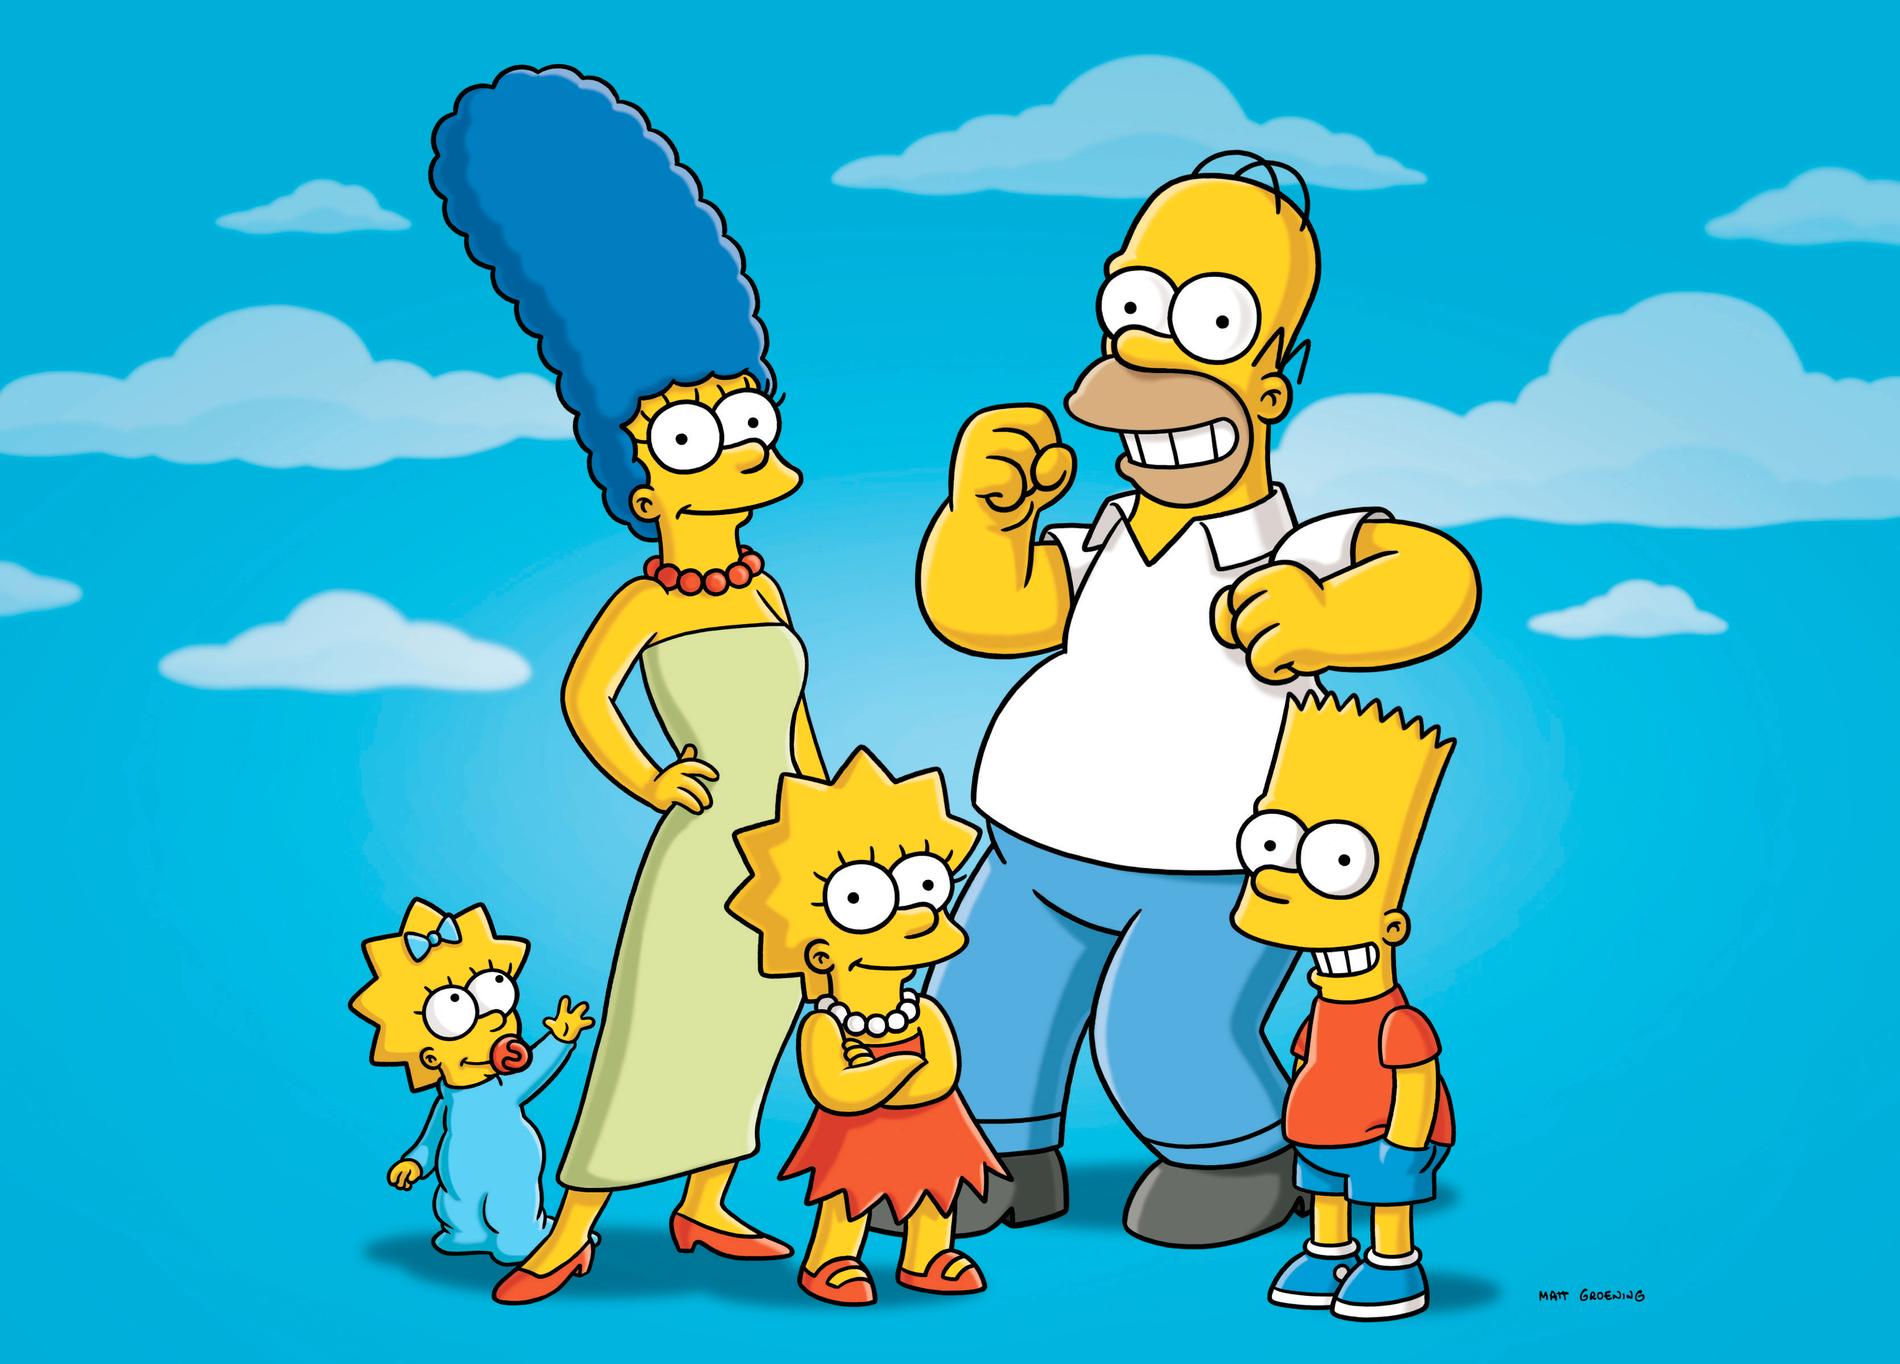 3. ”Simpsons”, USA, 1989- I 23 år – hittills – har den här animerade serien om den gula familjen med den älskvärda idioten Homer i spetsen haft fingret på pulsen, och parodierat allt som har varit värt att parodiera. En familjeserie i ordets rätta bemärkelse, som kombinerar lättillgänglig humor för barn med smarta, satiriska pop-, politik- och omvärldsreferenser för vuxna.